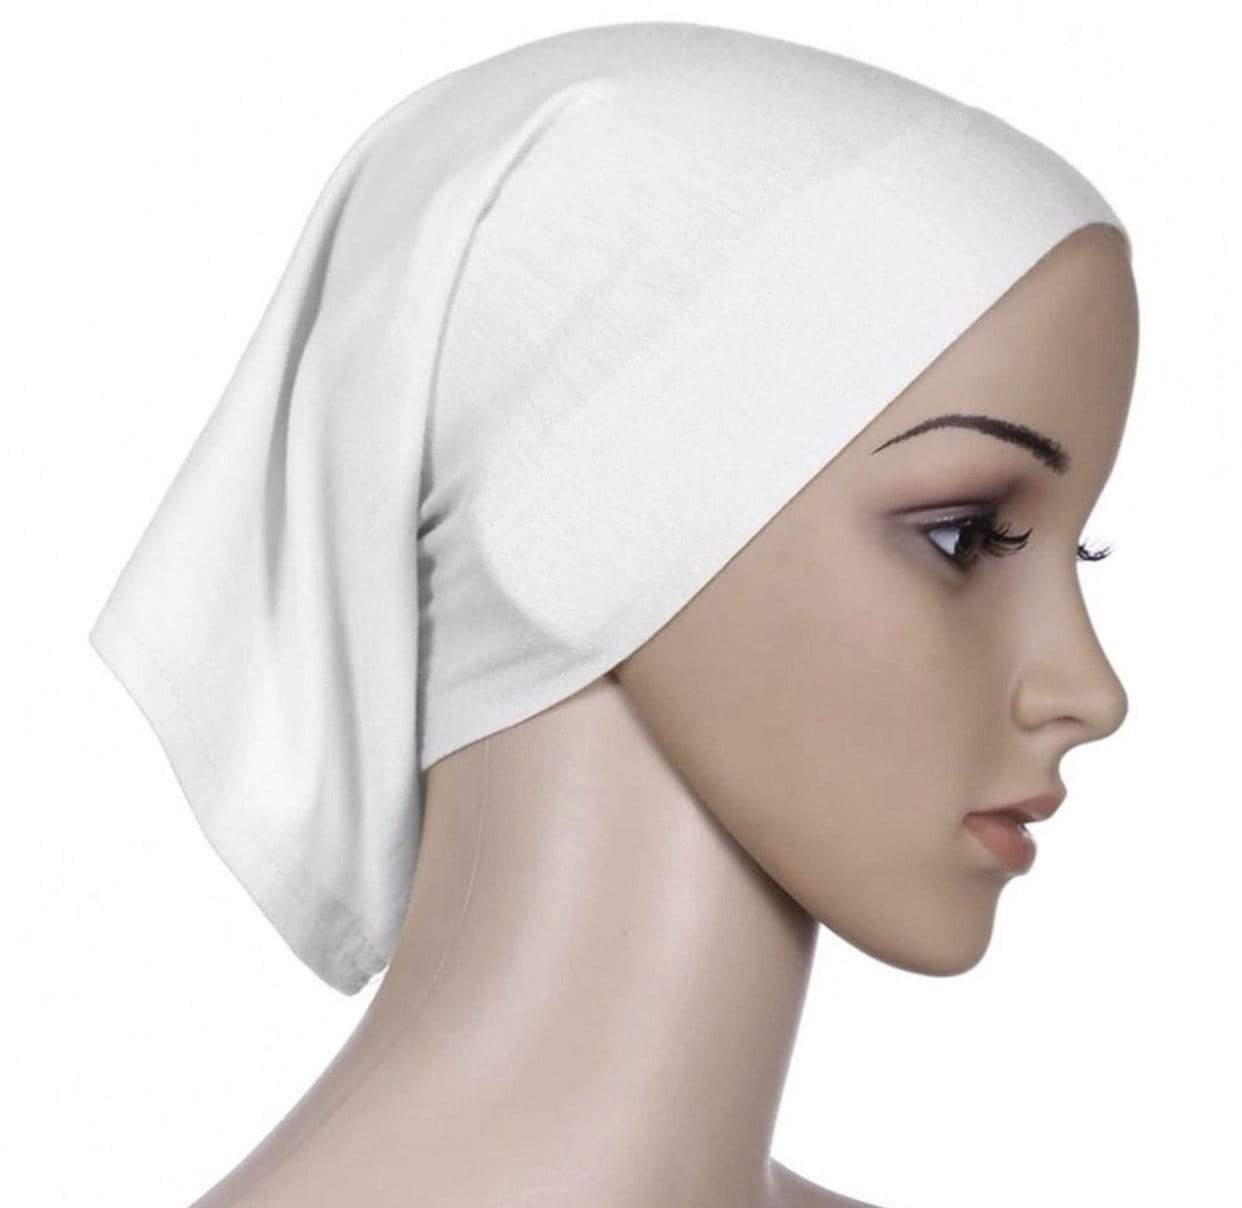 Hijabsandstuff Under turban cap Under Turban Cap - White Handmade Luxury Fashion Women Headwrap